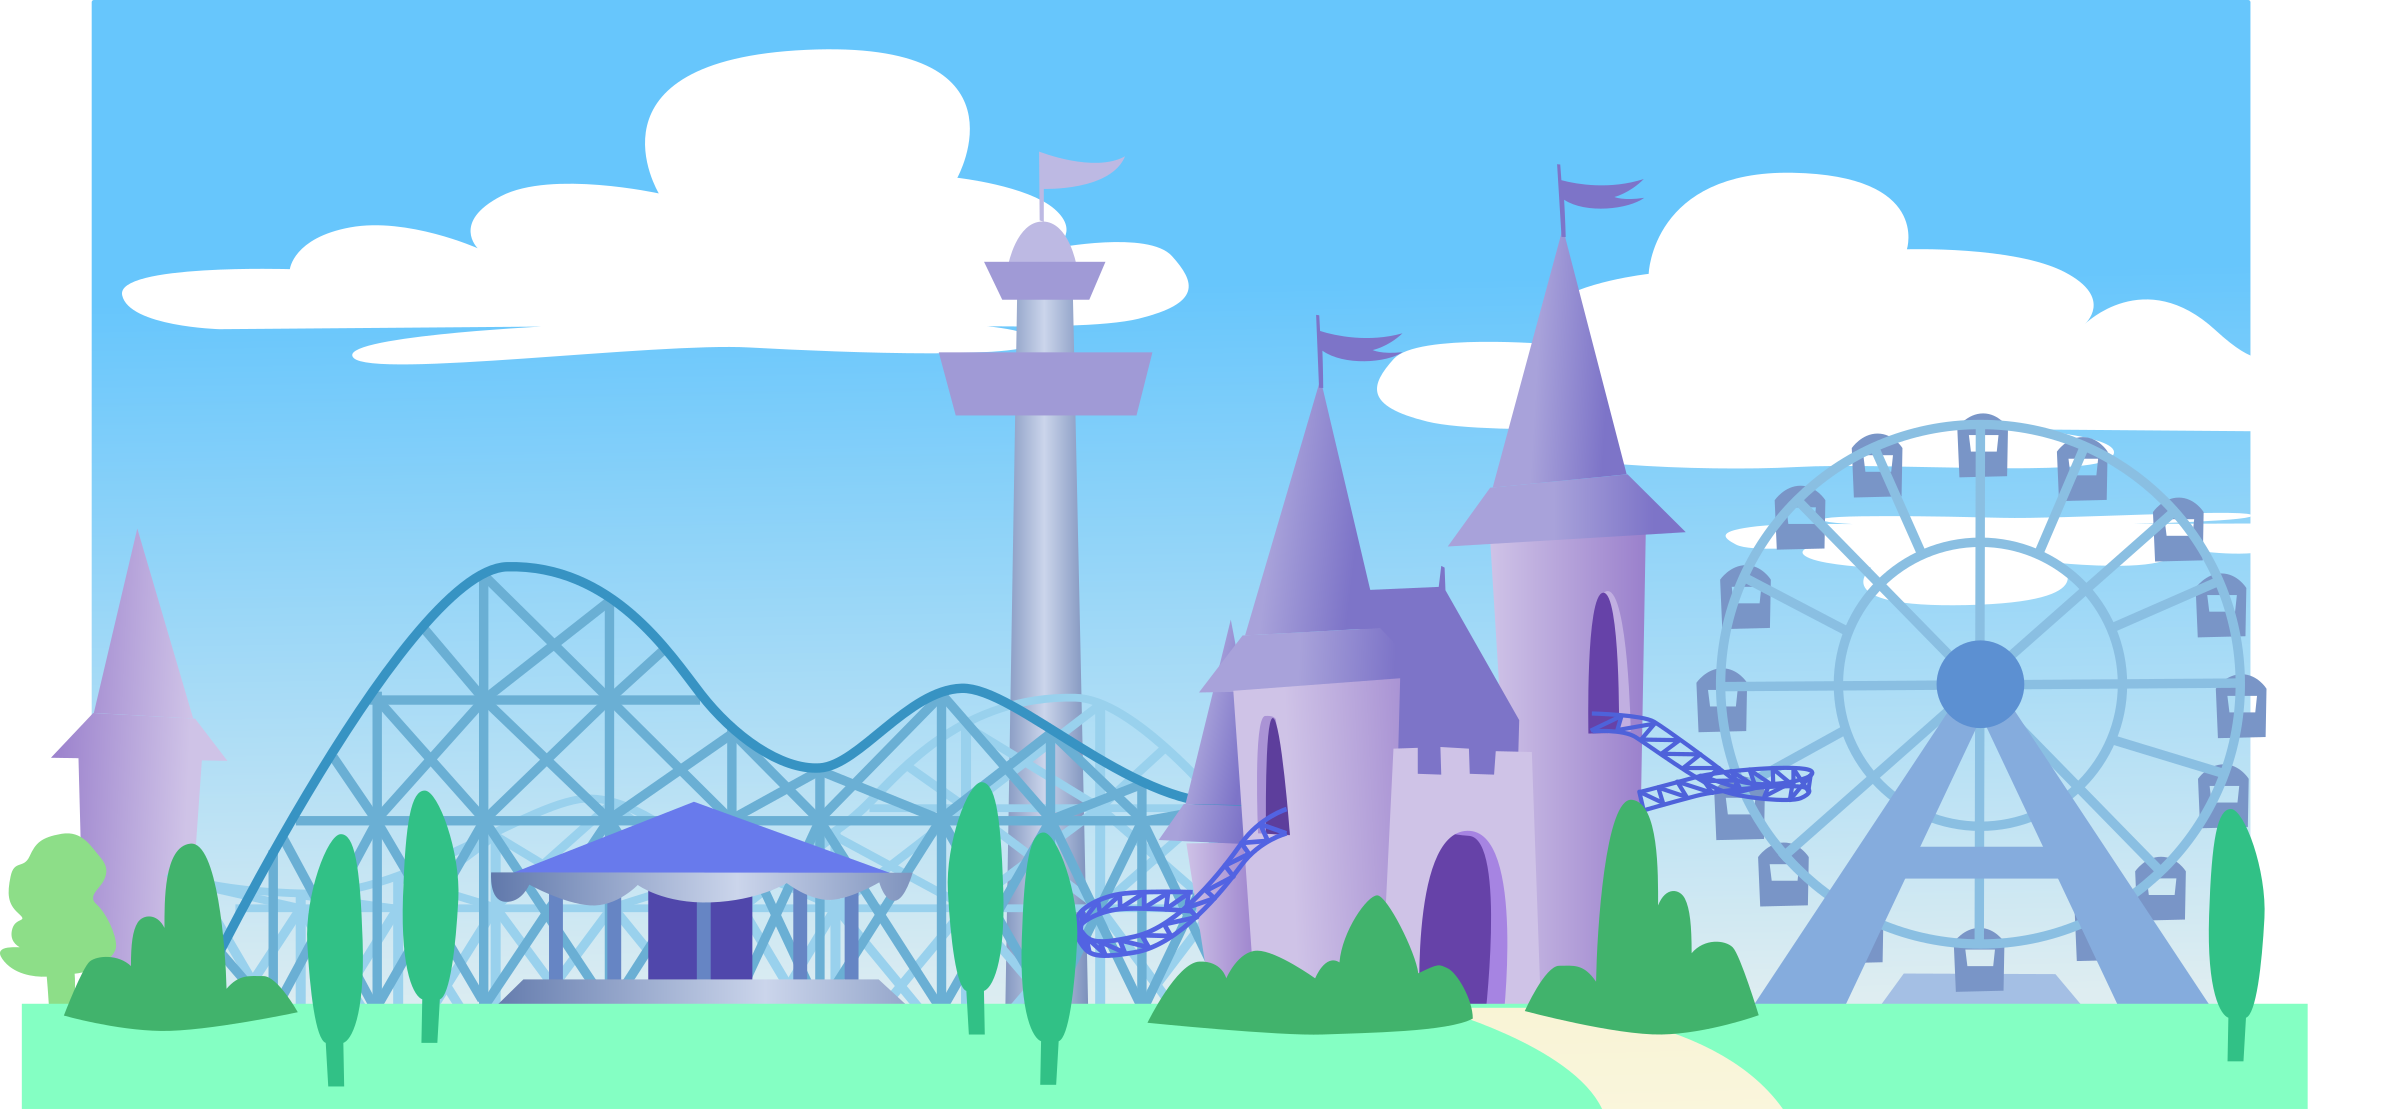 Clipart - Theme park